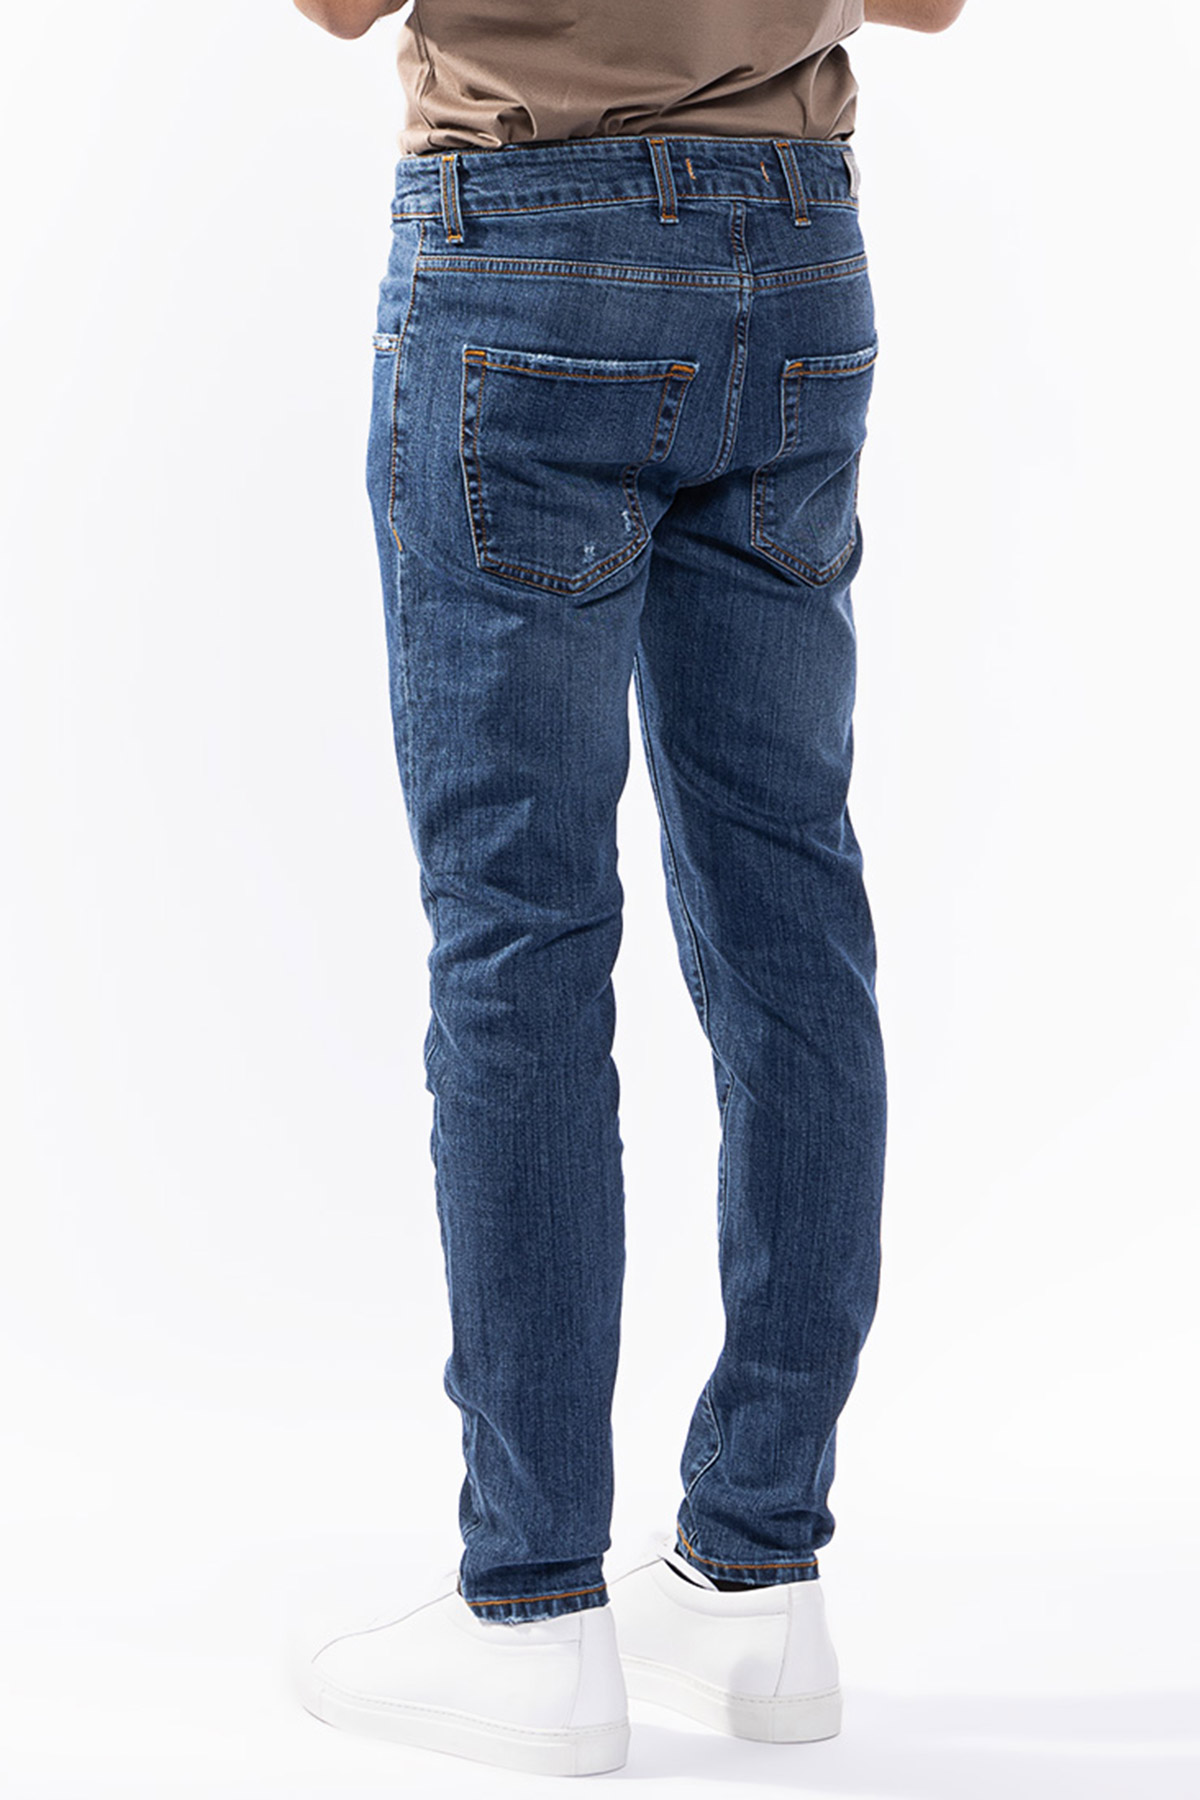 Jeans da uomo con strappi lavaggio medio con leggere sabbiature bianche modello 5 tasche